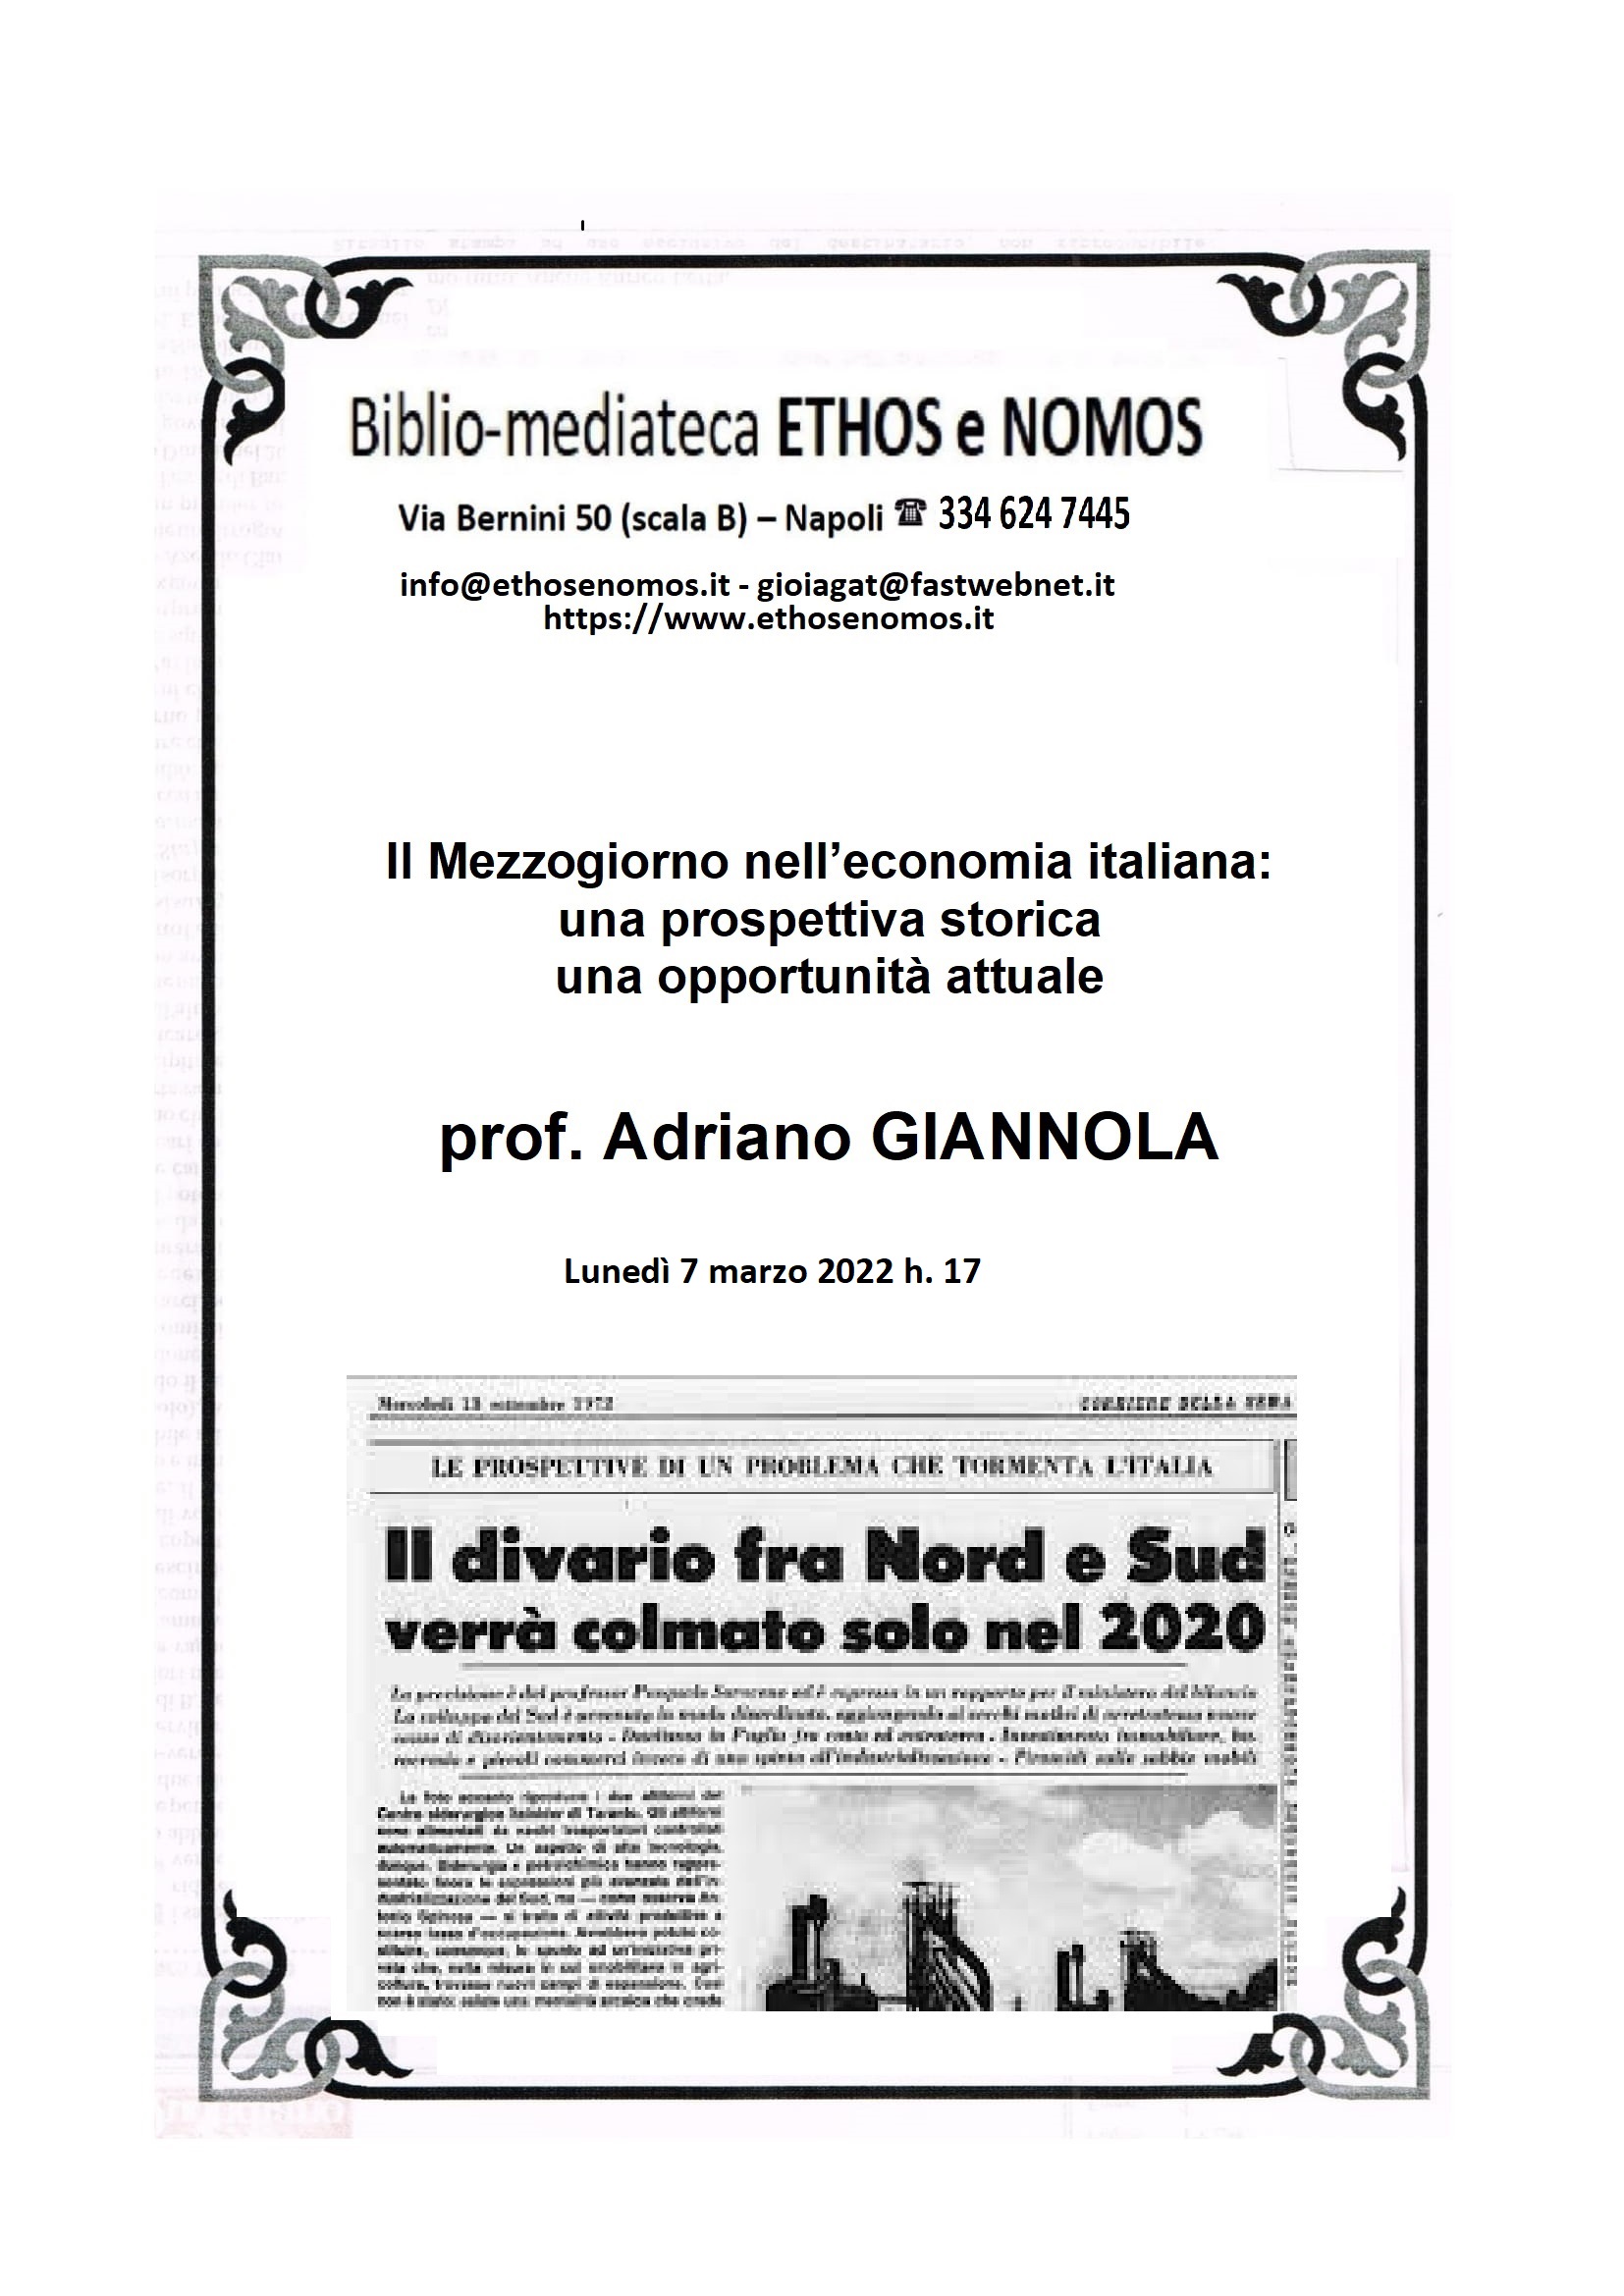 ADRIANO GIANNOLA - IL MEZZOGIORNO NELL'ECONOMIA ITALIANA: UNA PROSPETTIVA STORICA, UNA OPPORTUNITA' ATTUALE